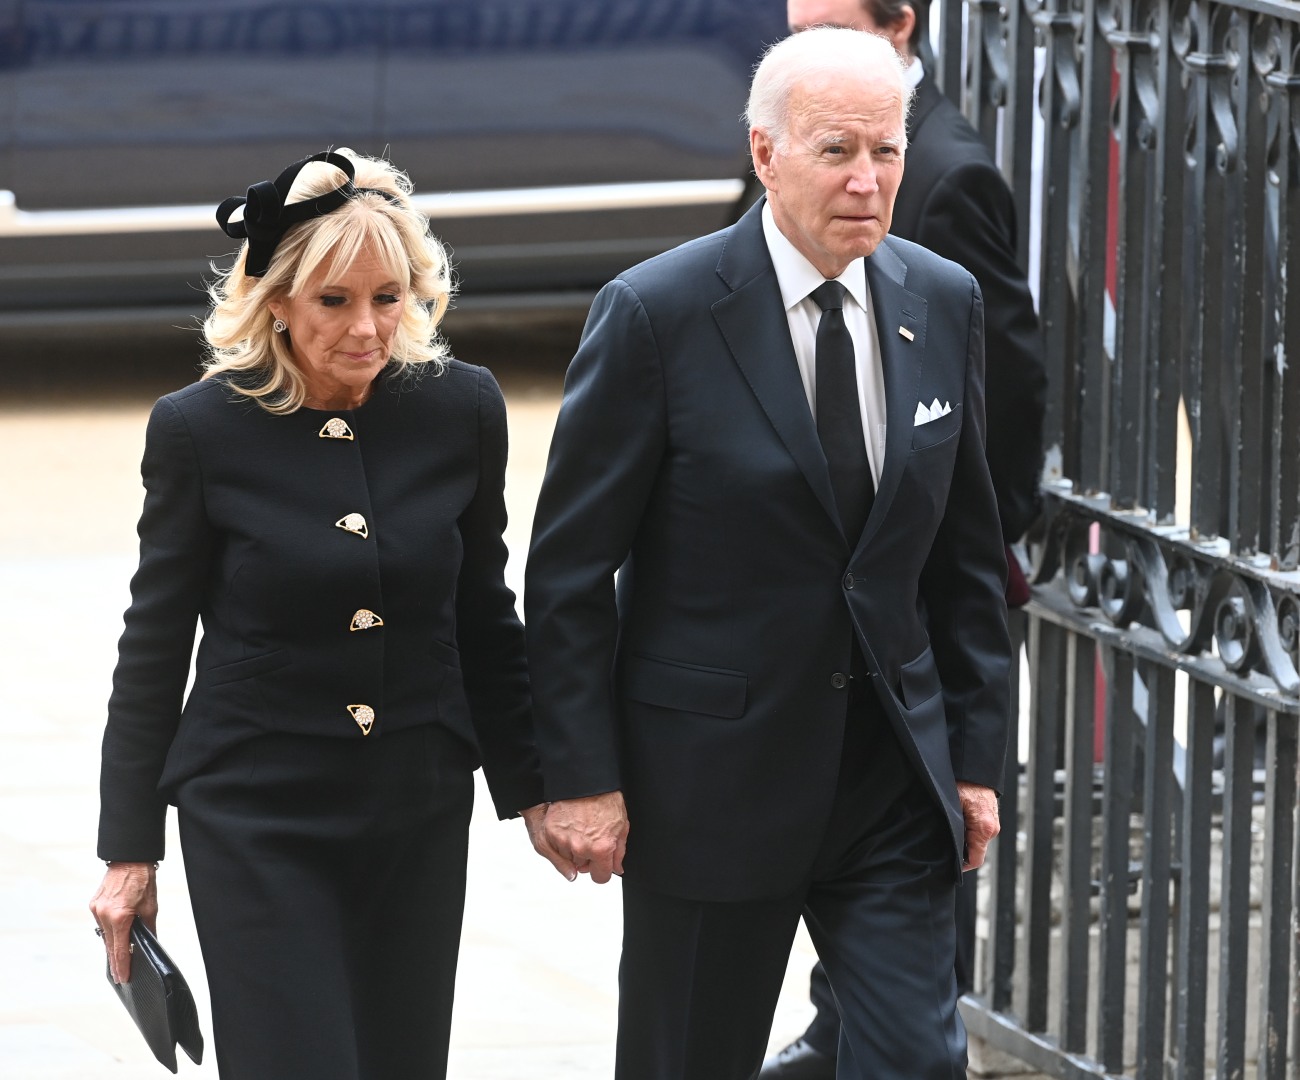 kaltak | Başkan Biden, QEII'nin cenazesine katıldı ve "salgın bitti" dedi